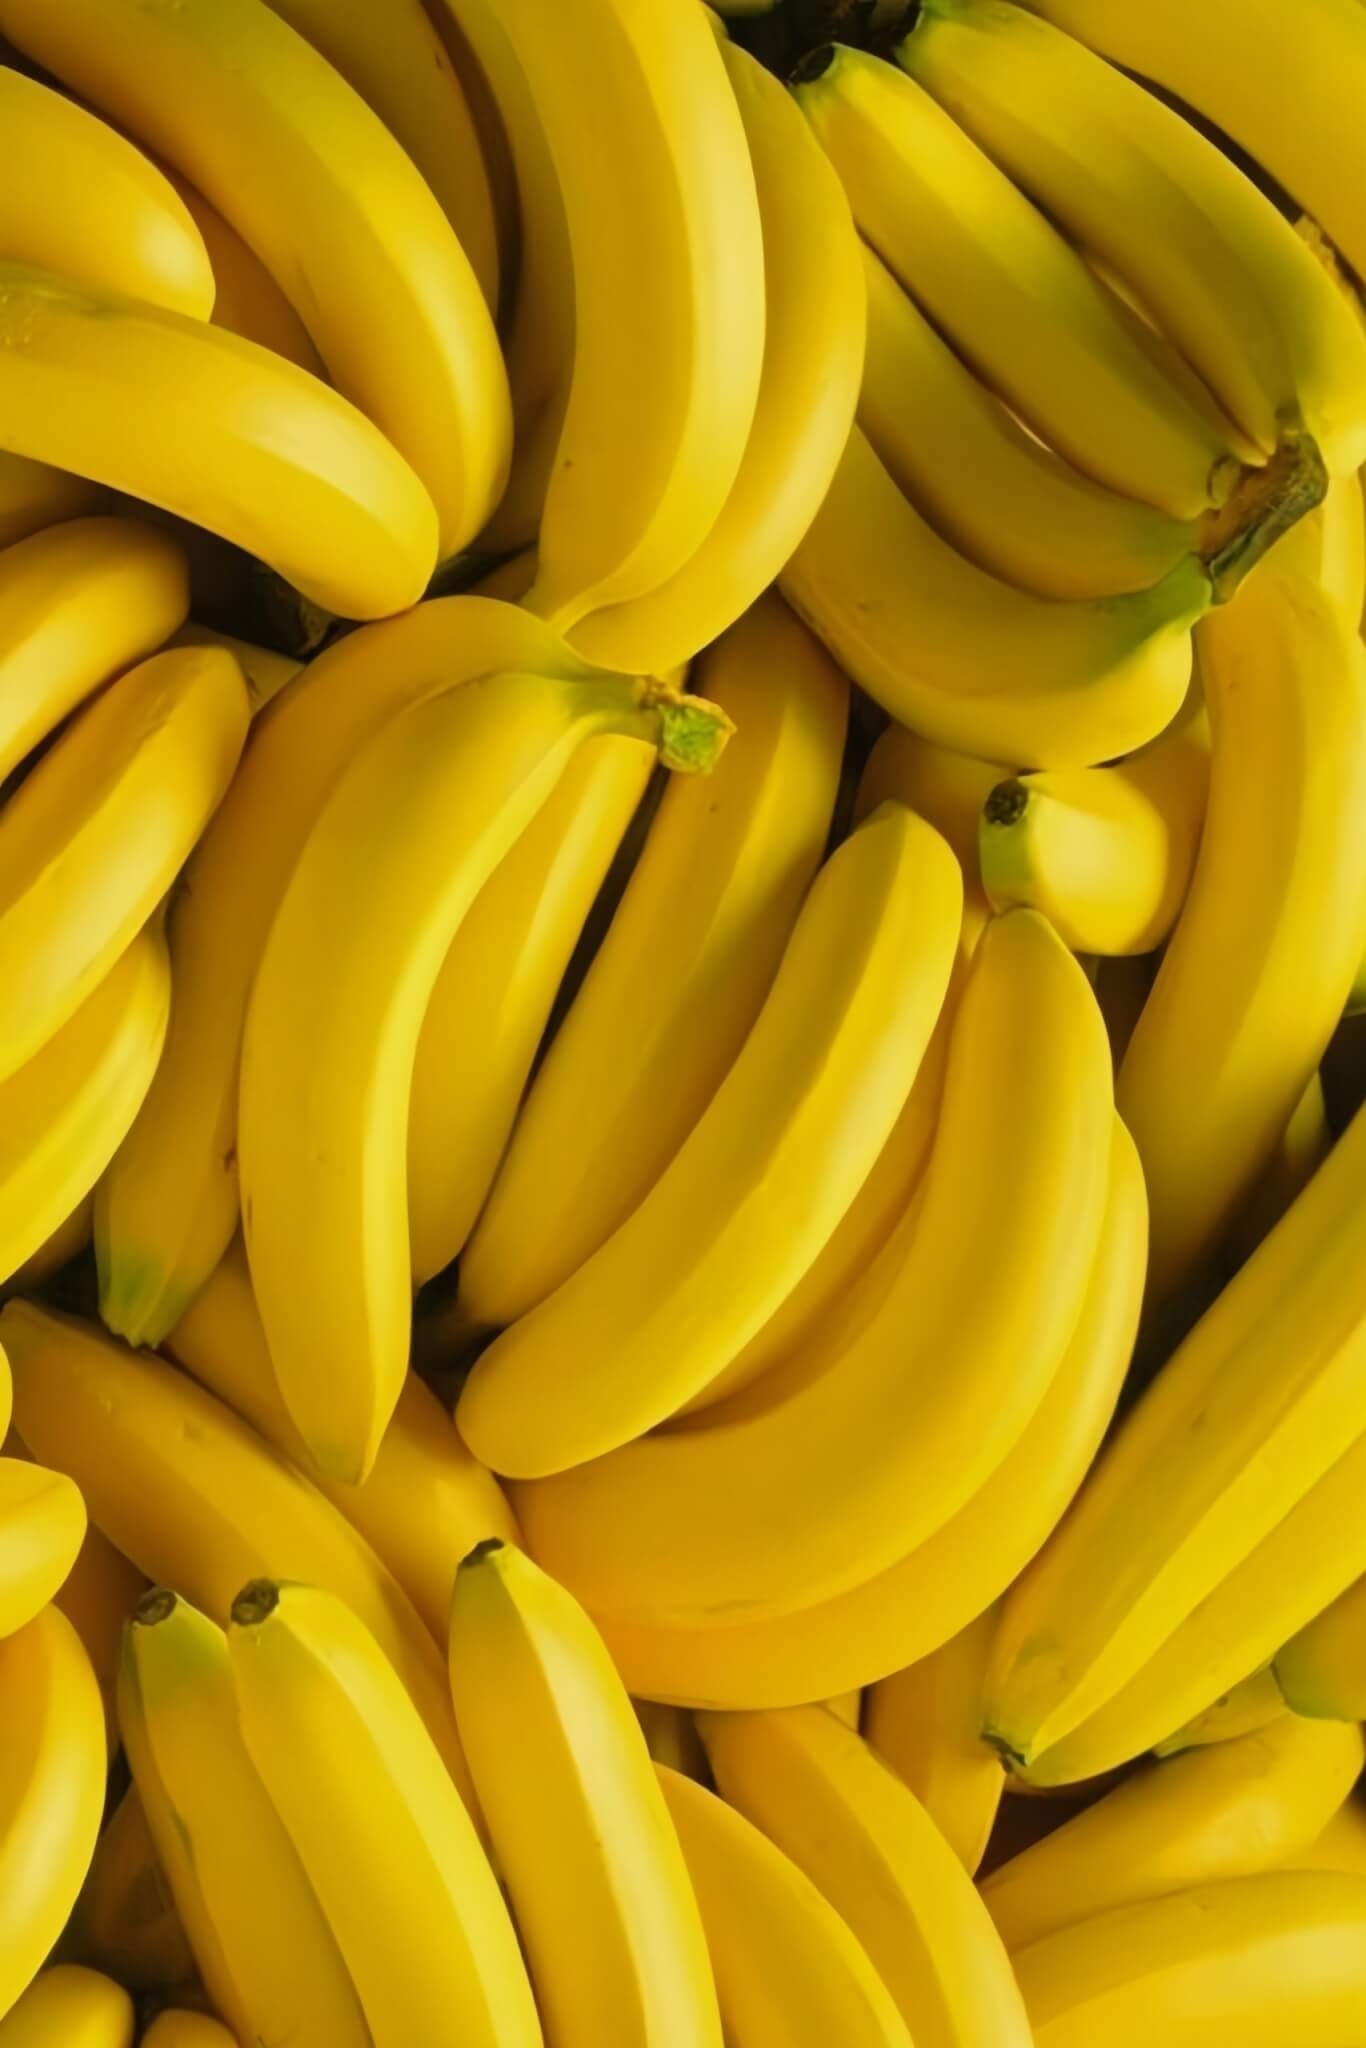 5. Banana As bananas são uma ótima fonte de energia rápida, especialmente para pessoas ativas ou para aqueles que precisam de um impulso de energia antes de atividades físicas, visto que é comumente inserida em receitas de pré-treino. Reprodução: EdiCase